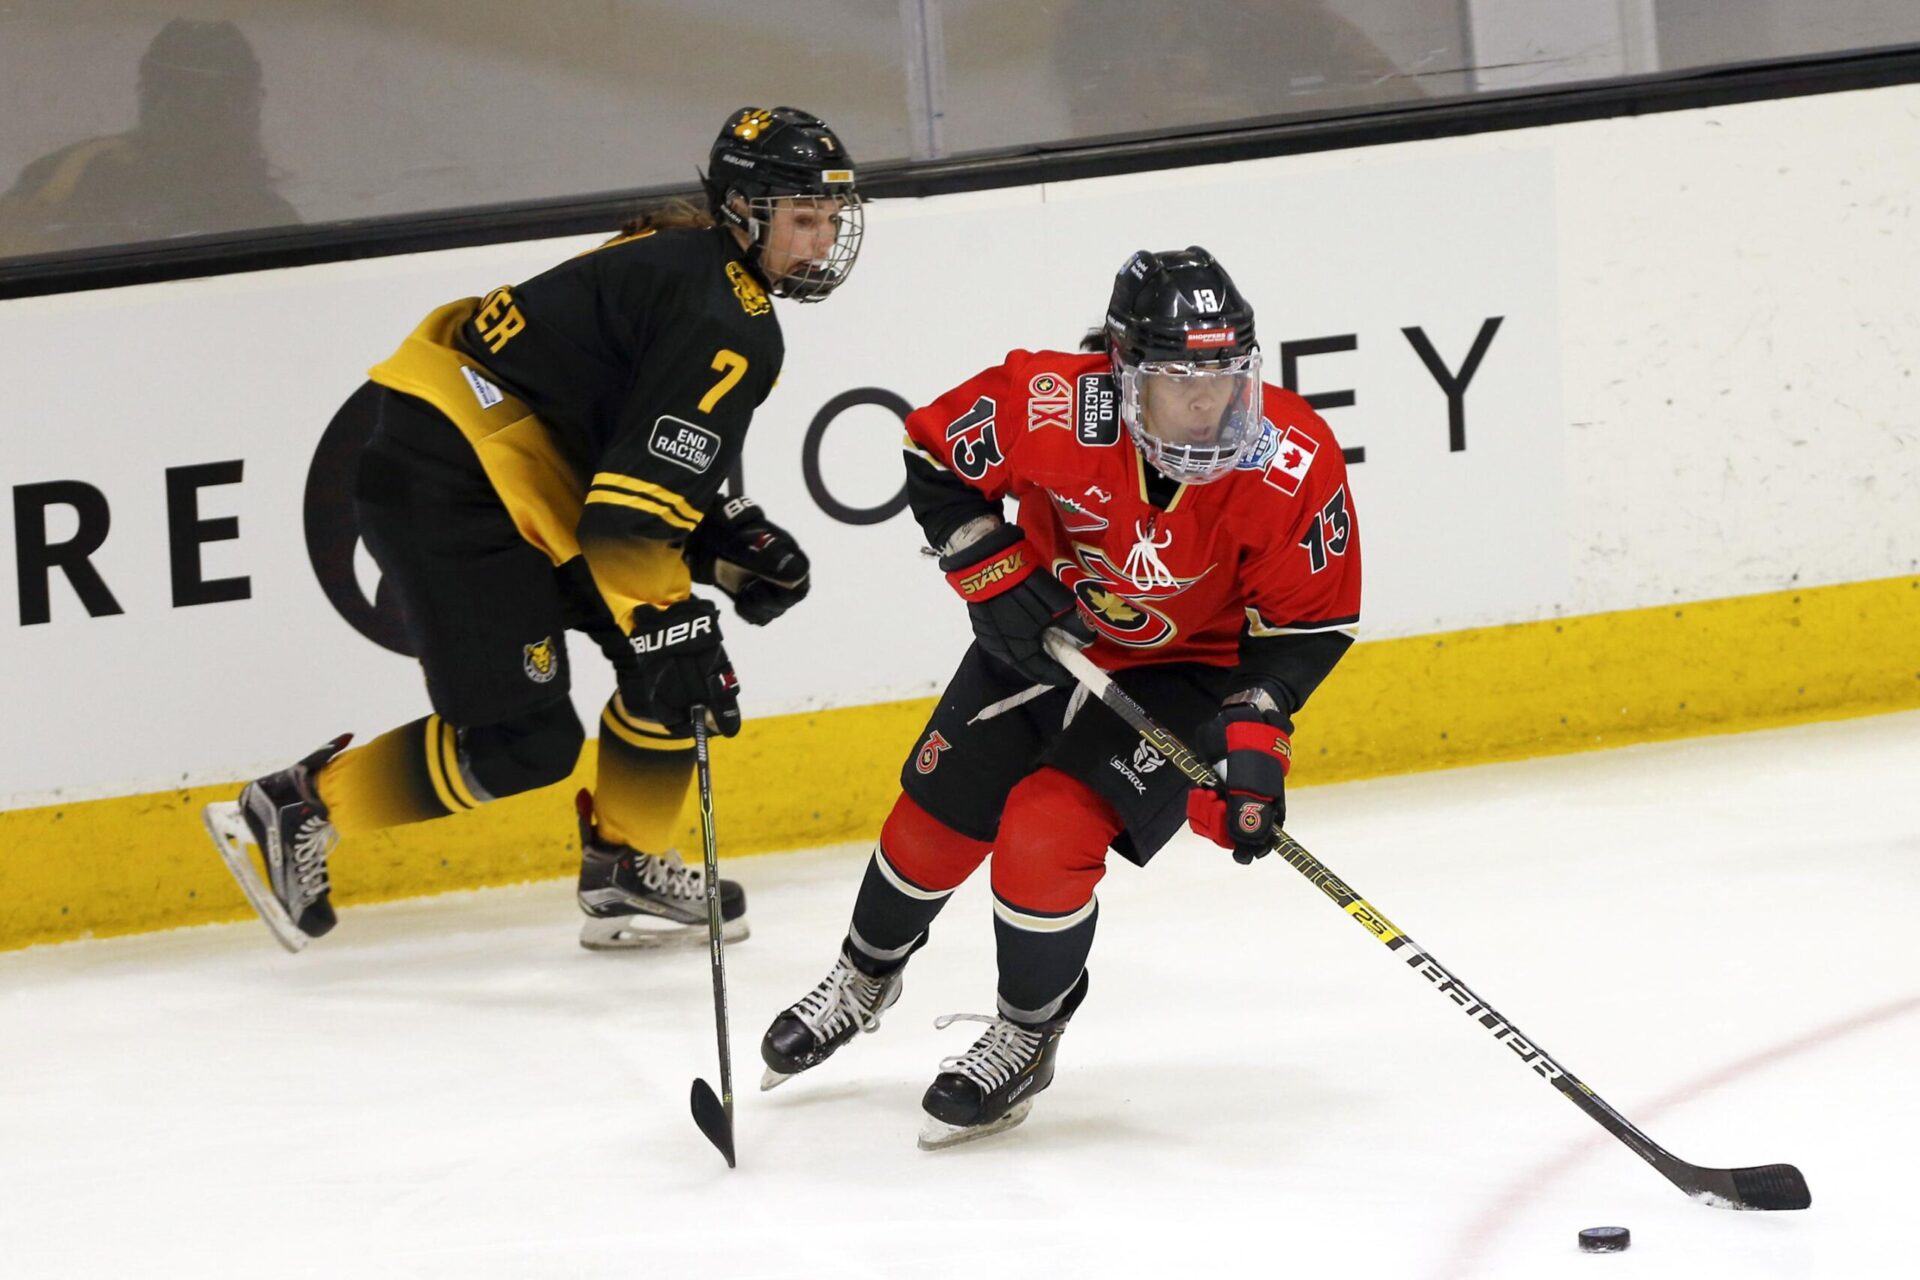 La estrella de PHF, Grant-Mentis, lista para el hockey femenino en Buffalo